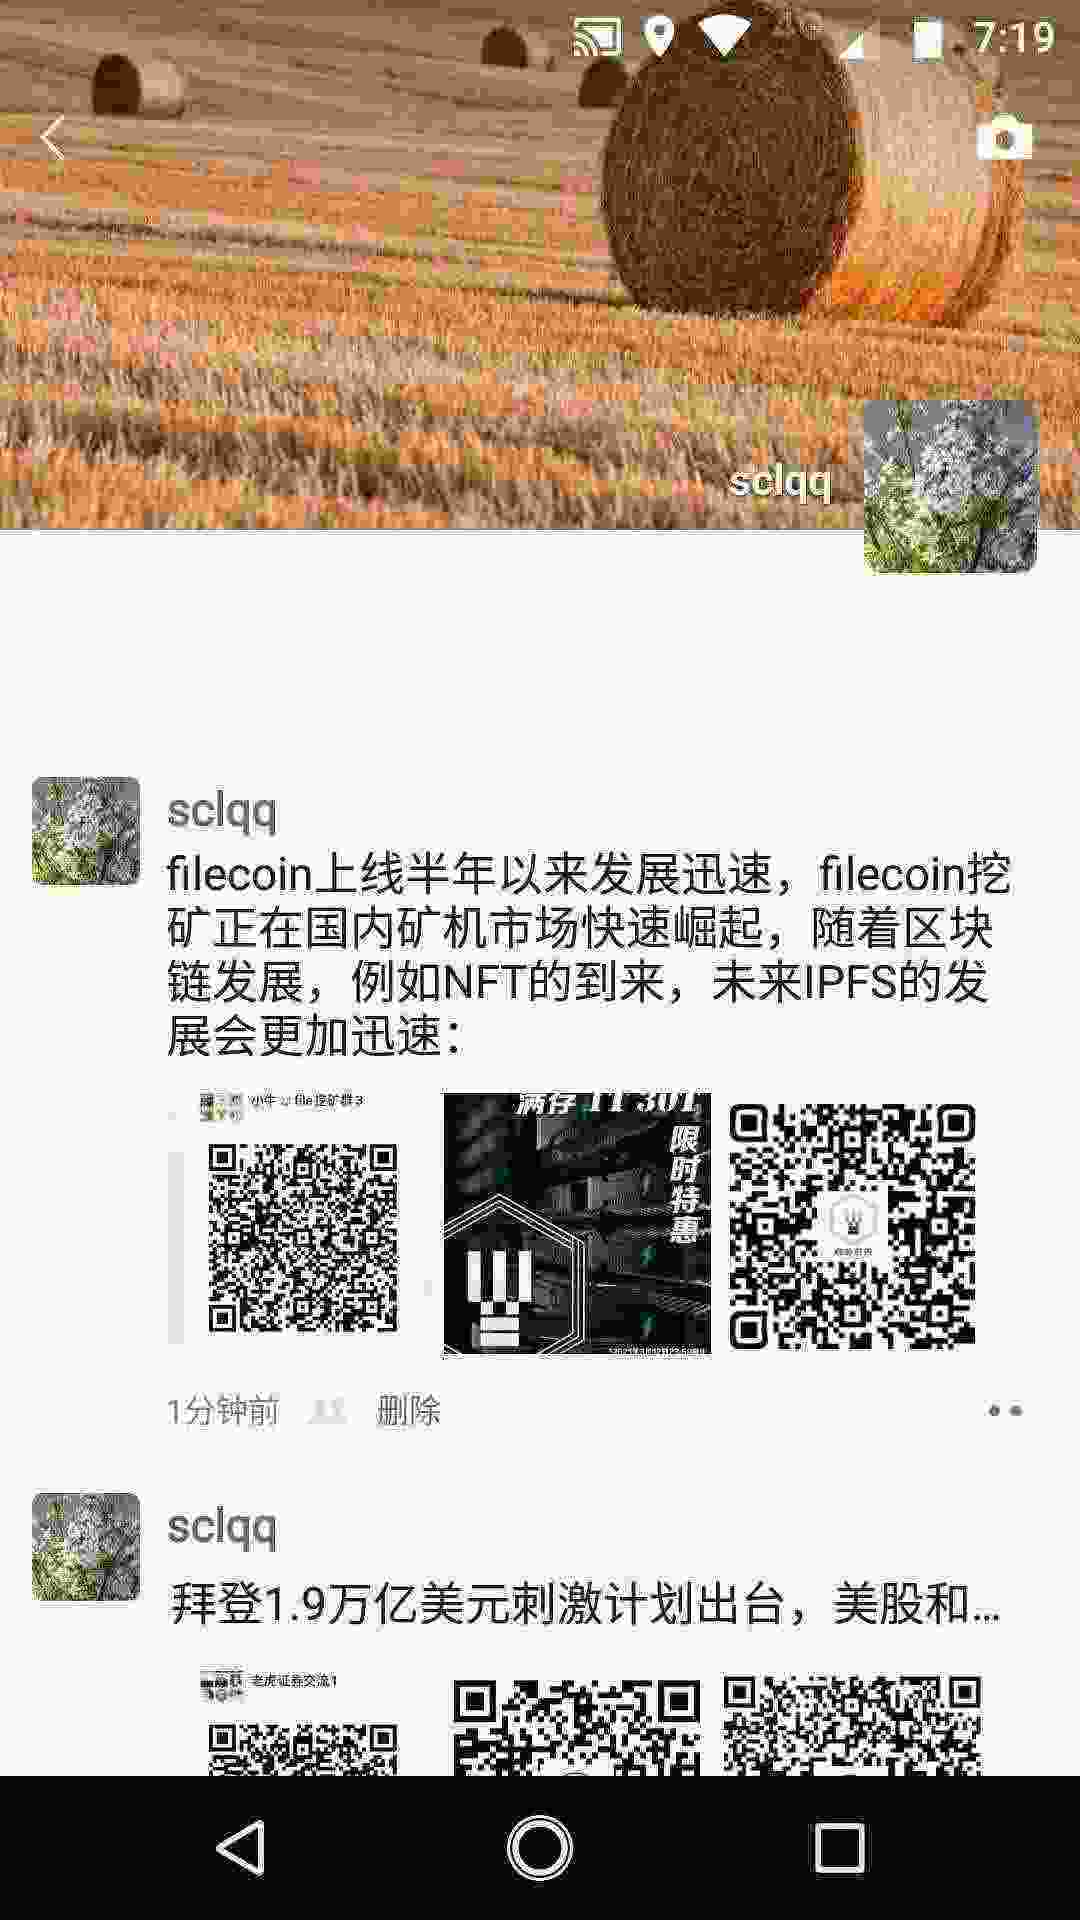 西部时WeChat Image_20210311192006.jpg